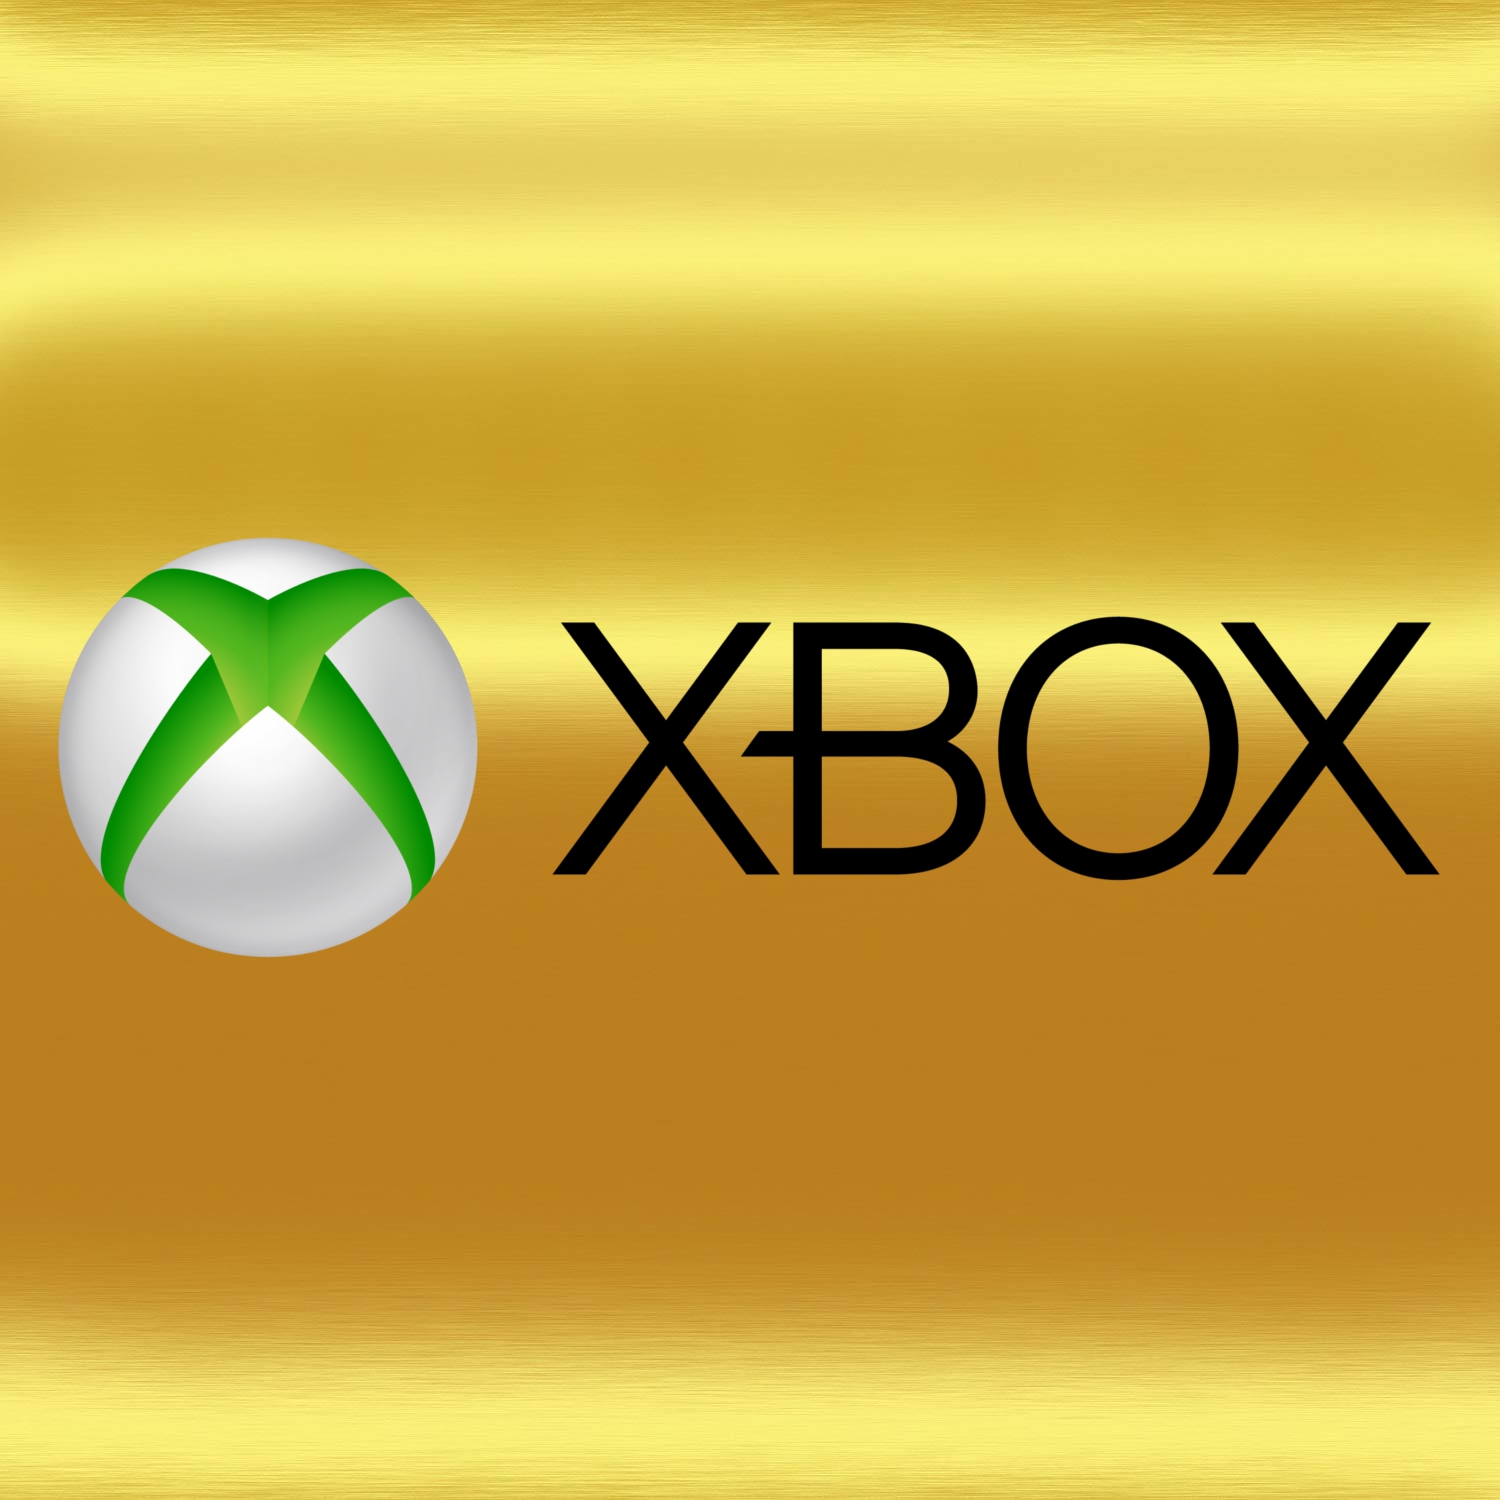 x-box logo.jpg